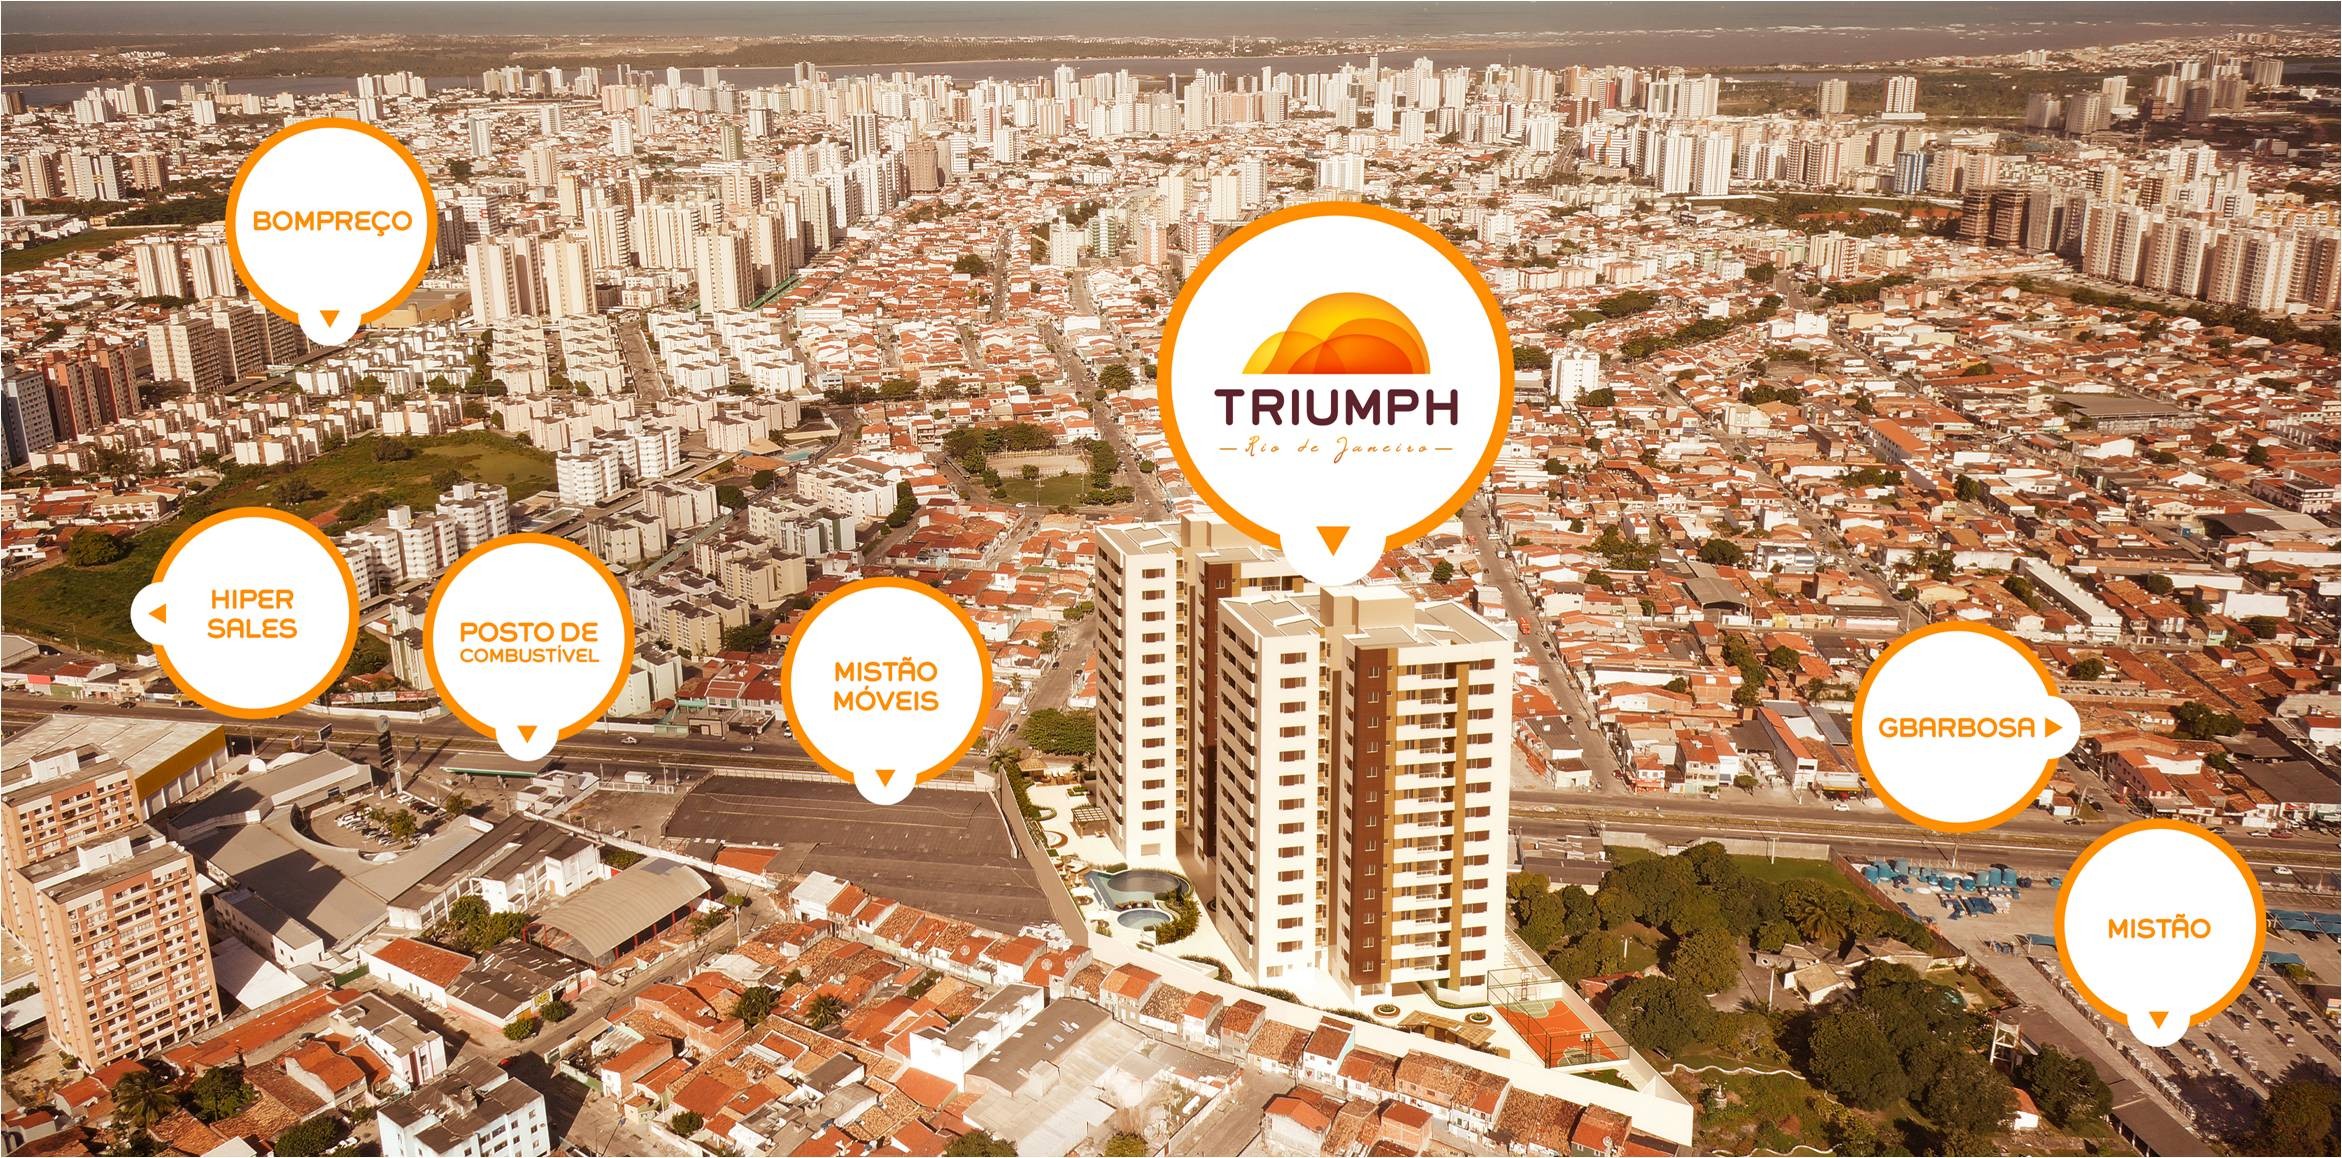 Triumph Rio de Janeiro